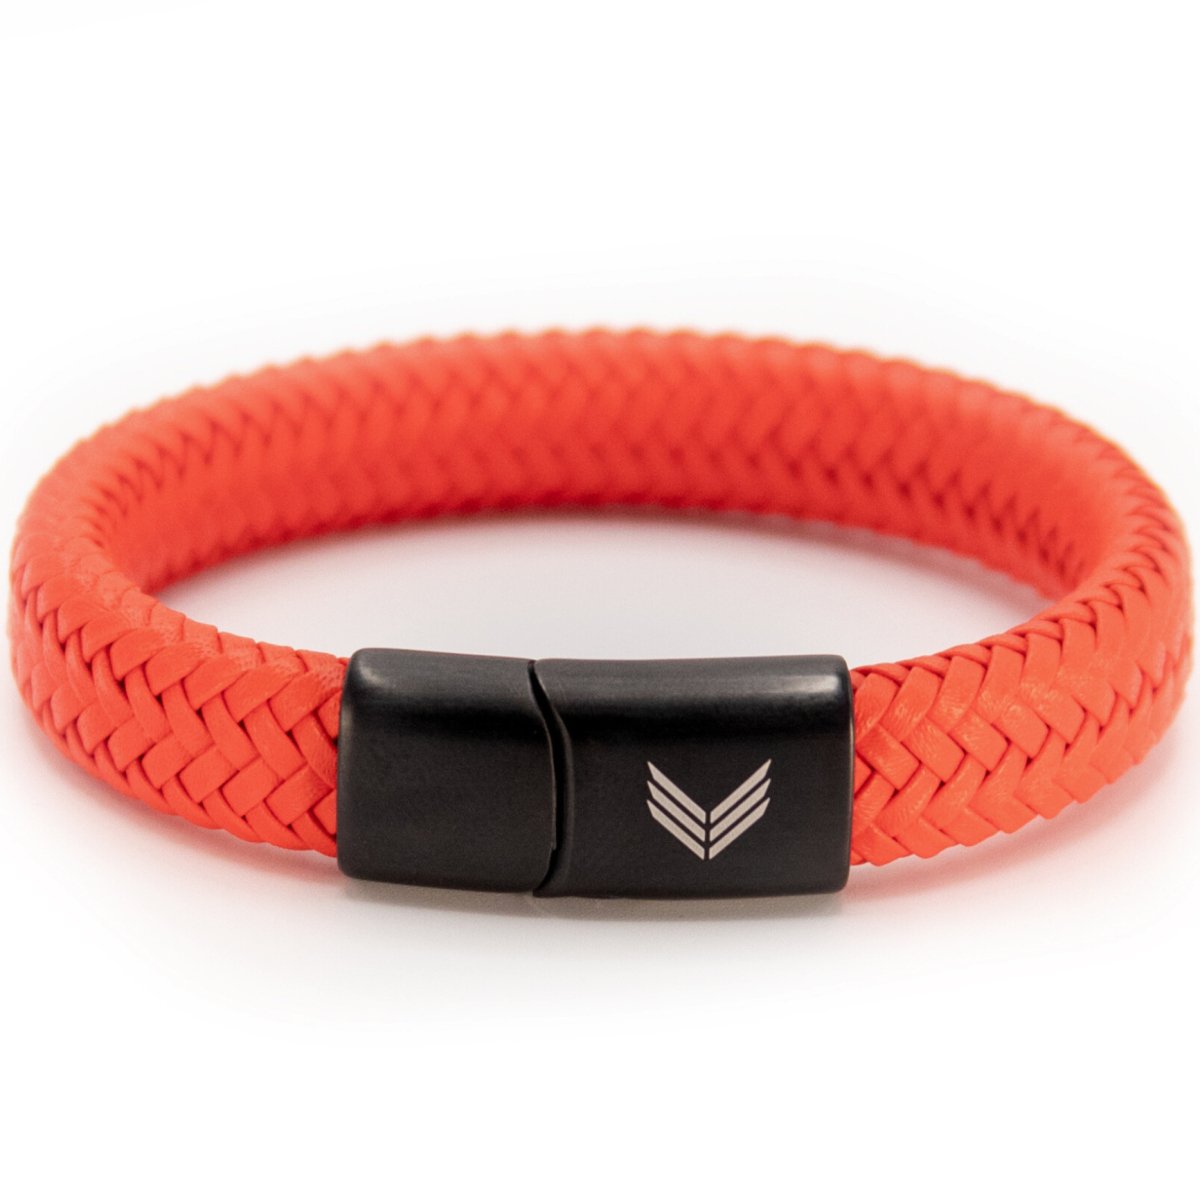 Vertig Magnetic Leather Bracelet Orange